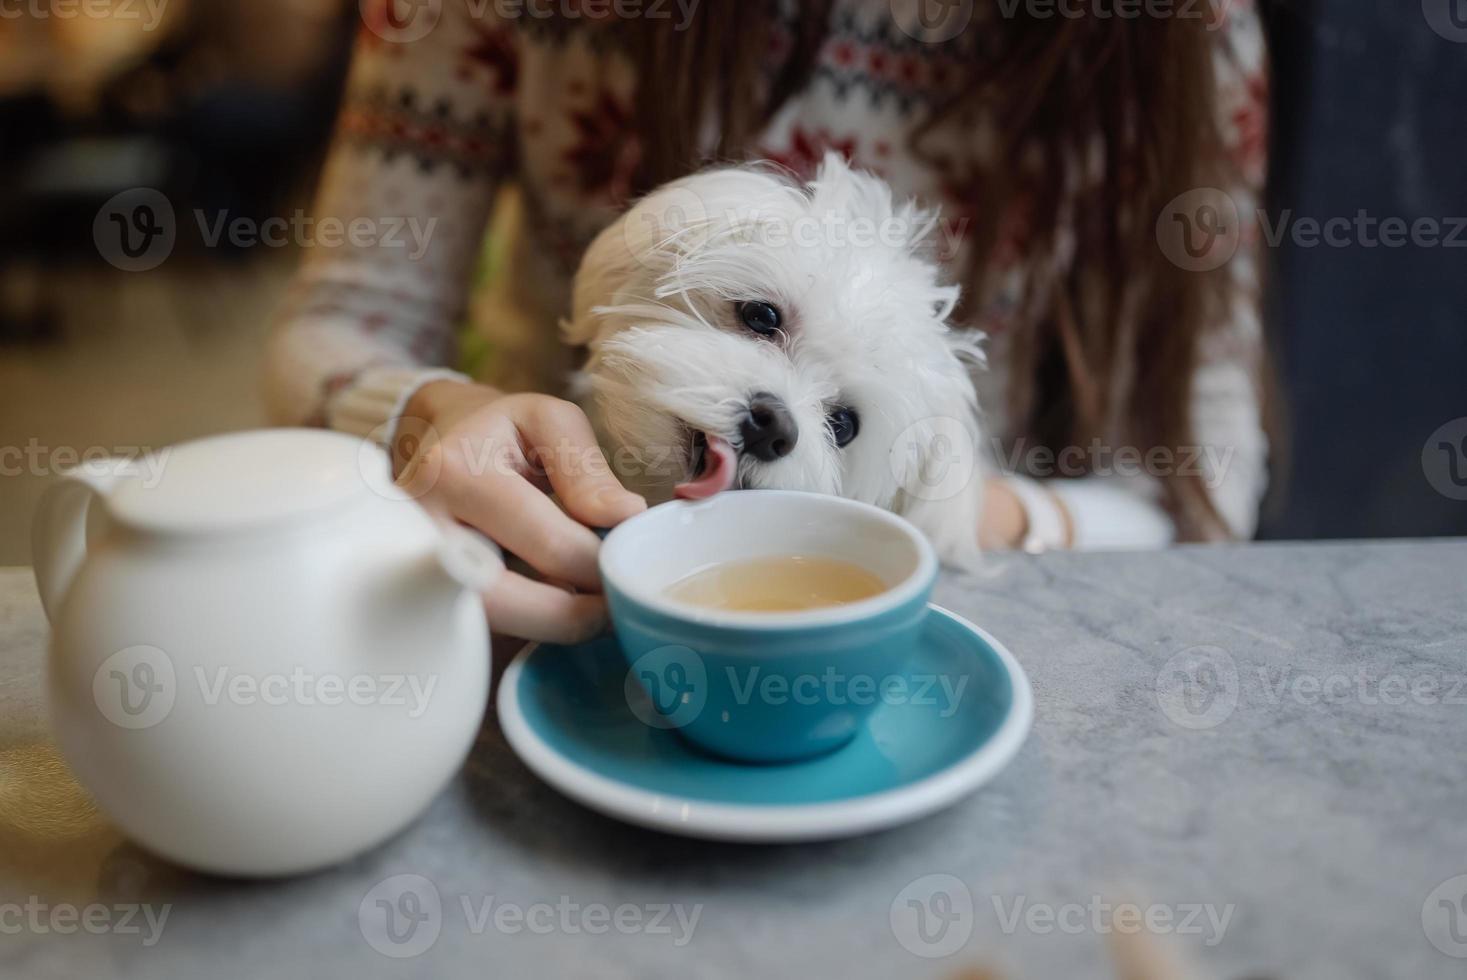 mooi vrouw is Holding haar schattig hond, drinken koffie in cafe foto